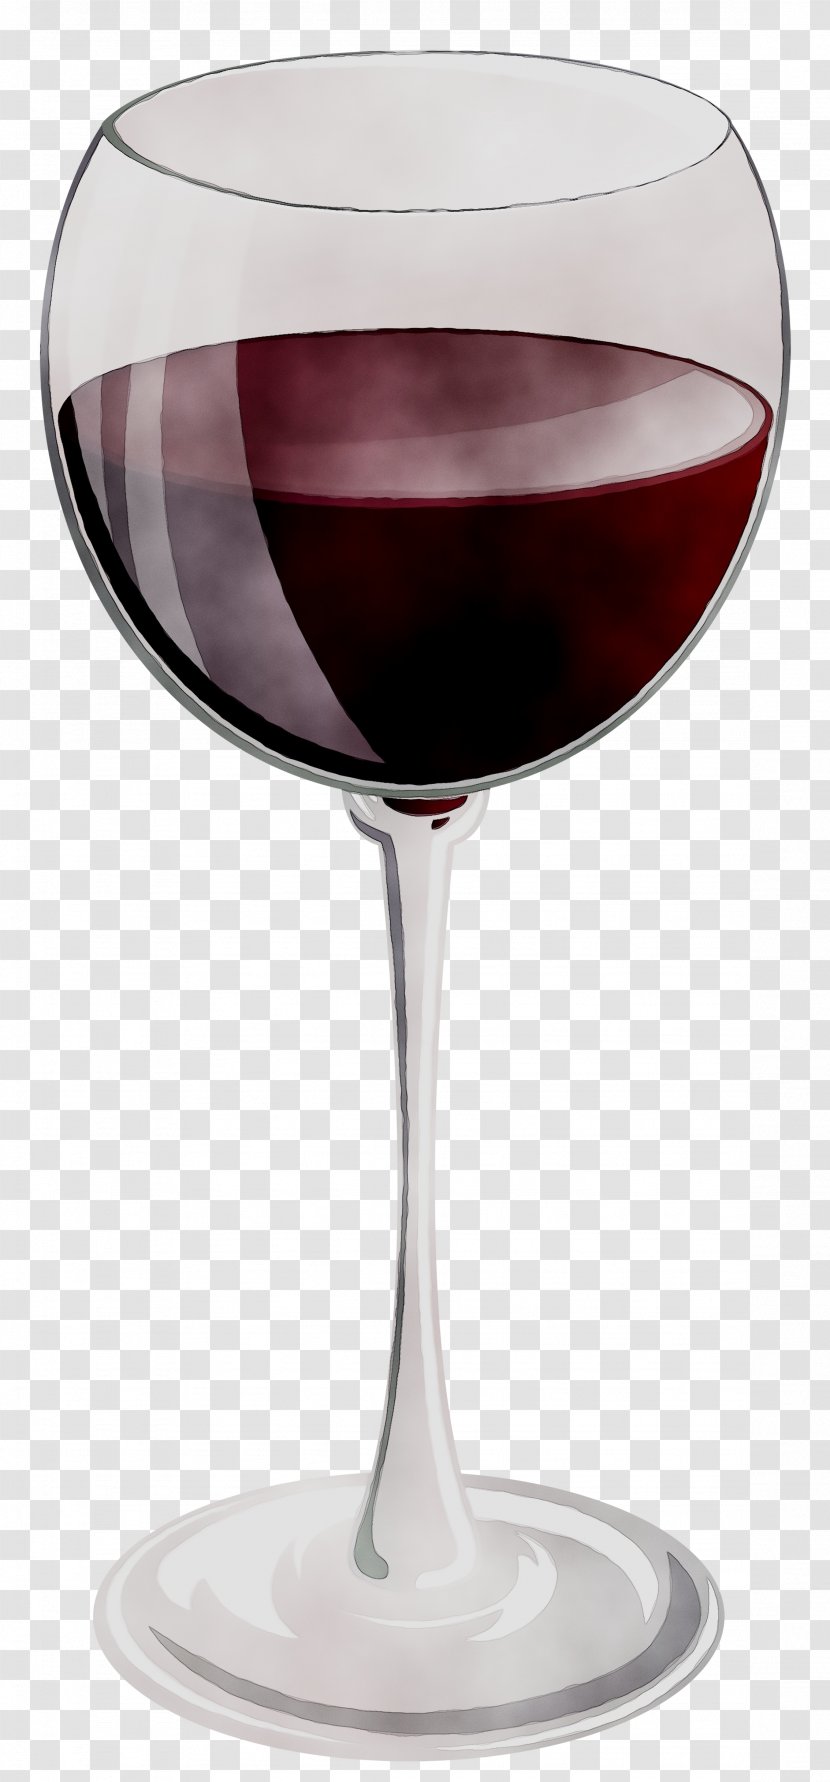 Wine Glass Red Kir Cocktail - Distilled Beverage Transparent PNG